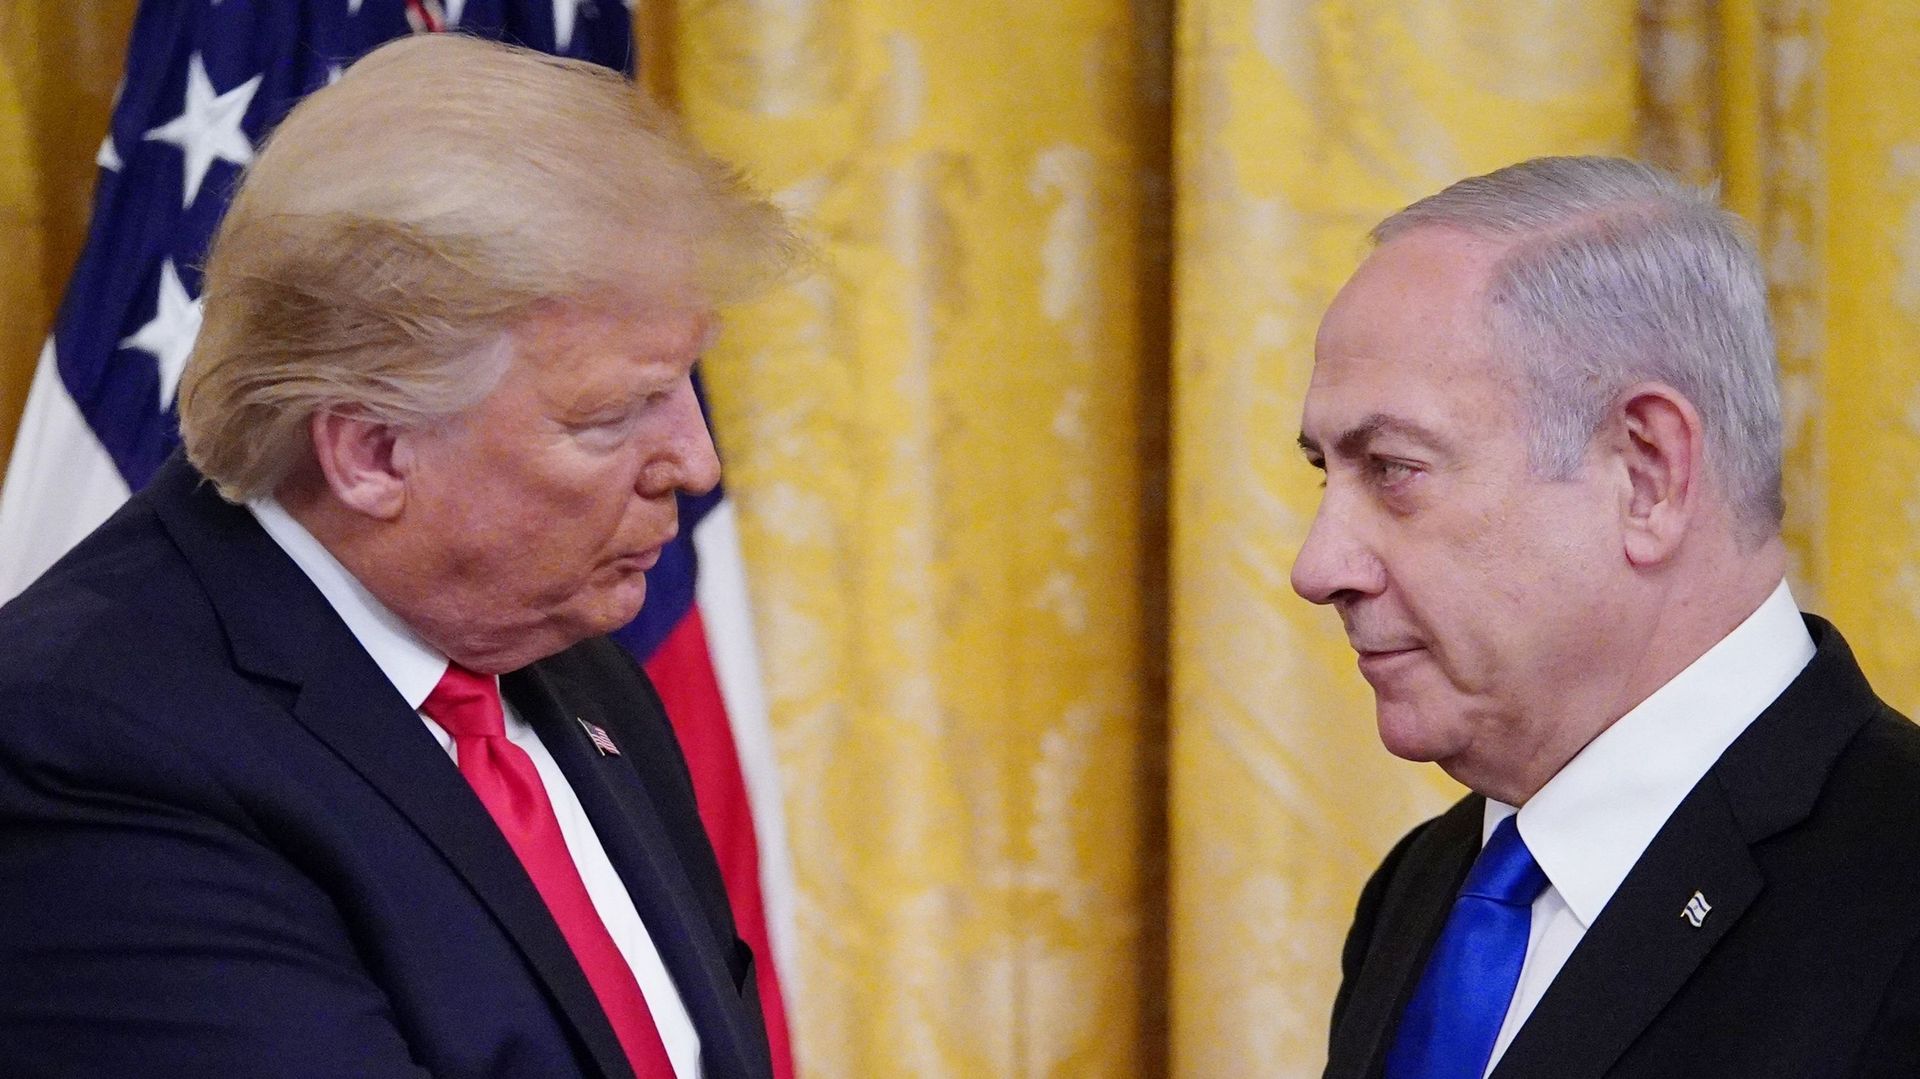 Donald Trump et Benjamin Netanyahu se retrouvent tous les deux face à des échéances électorales capitales.